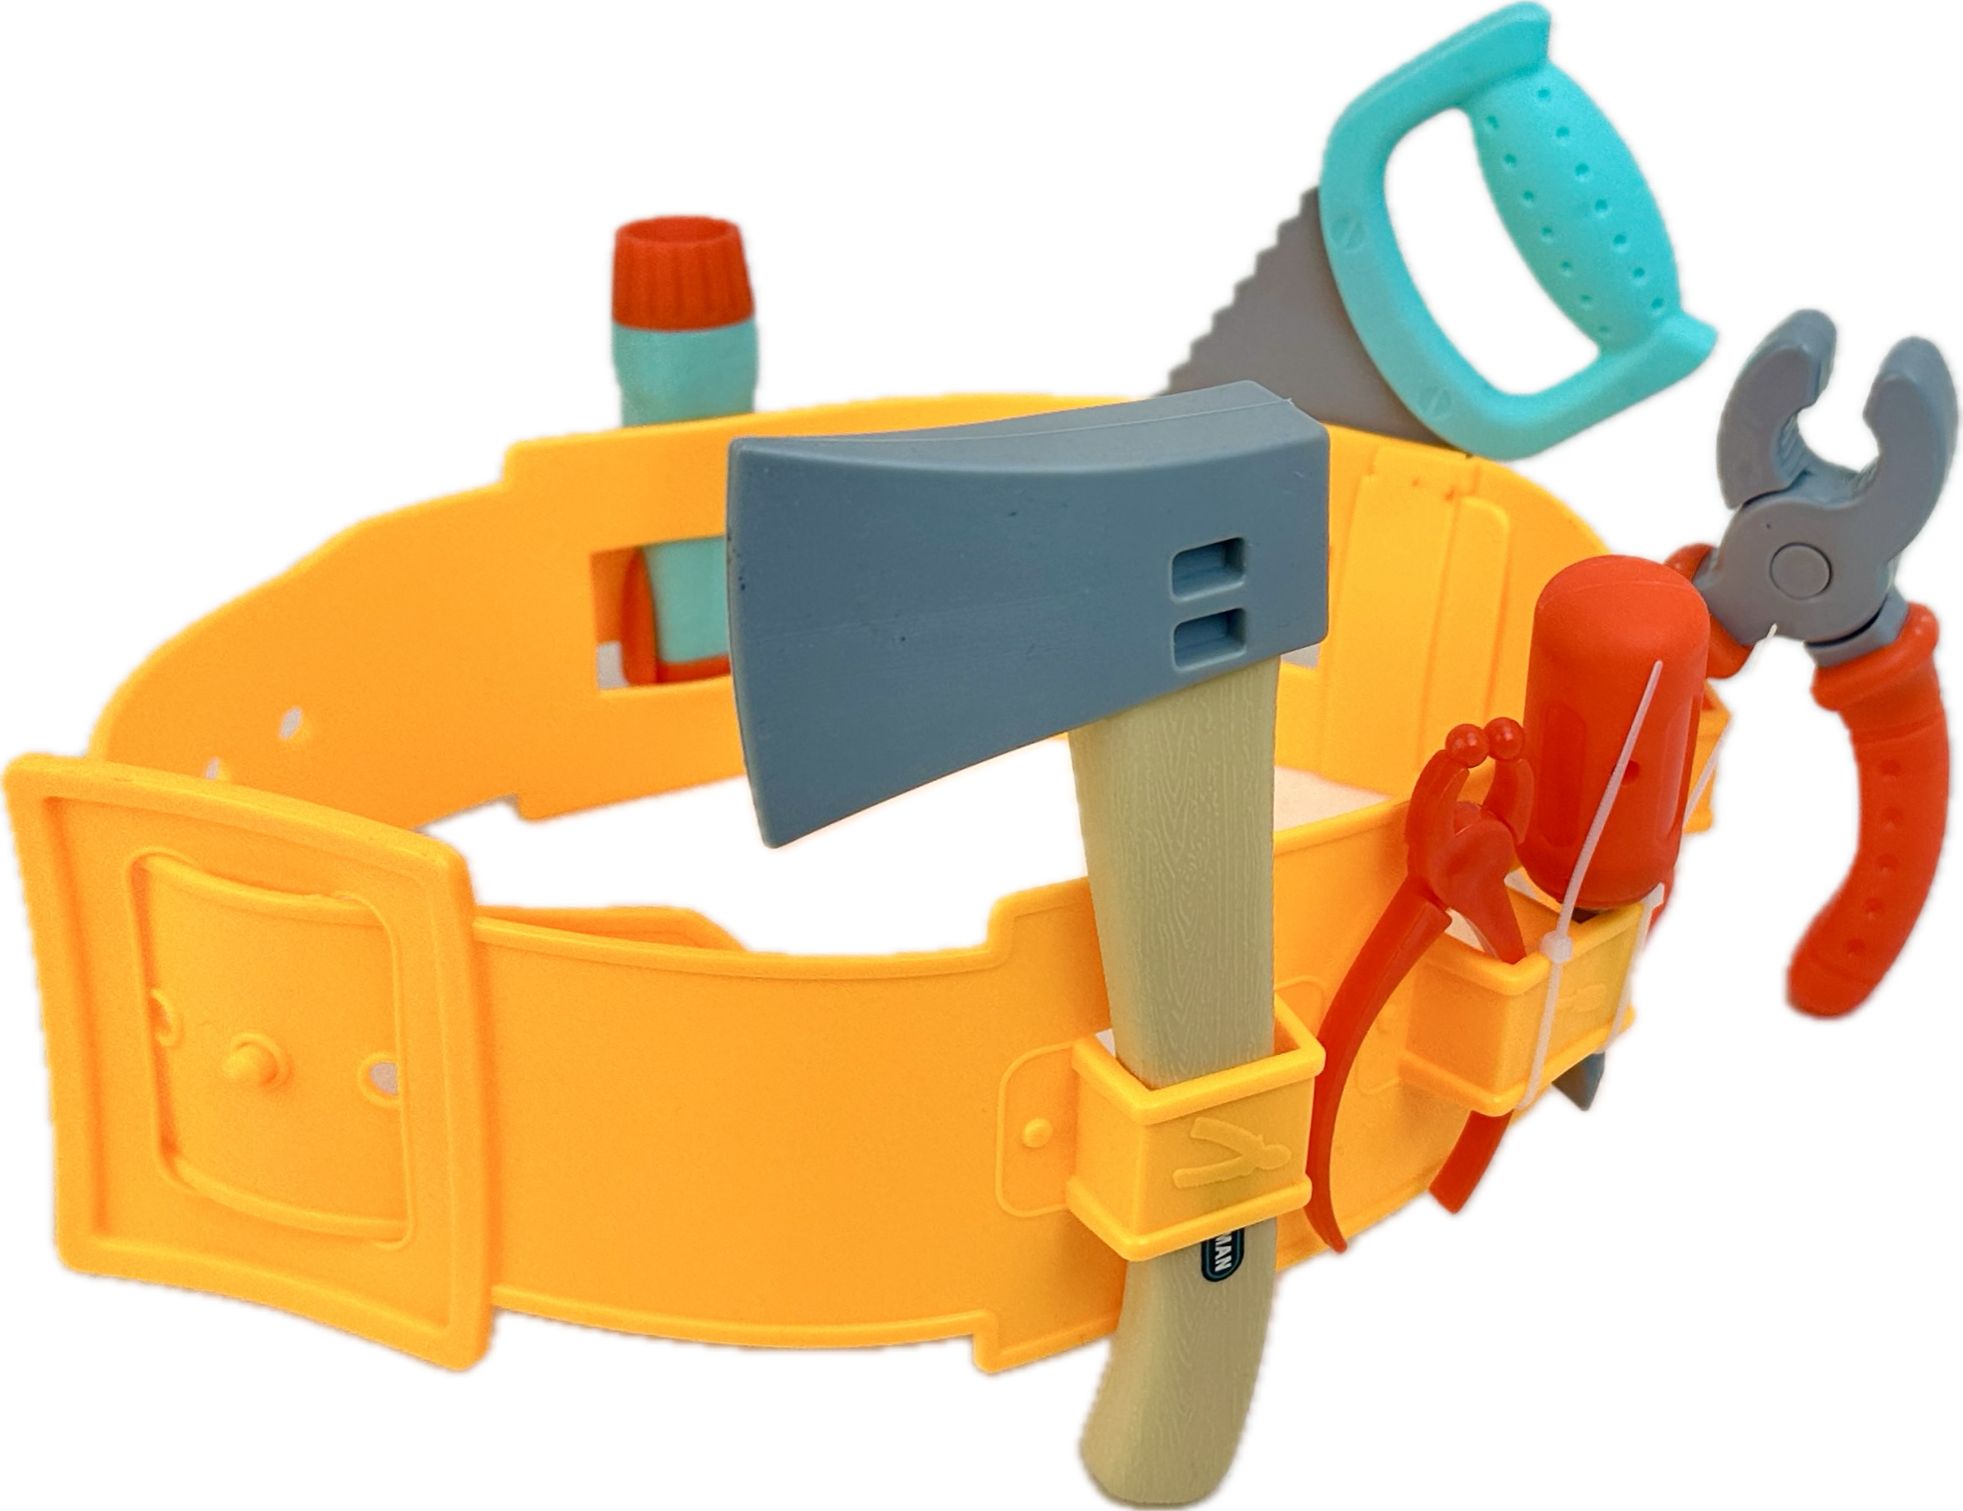 Детский игровой набор строительных инструментов на ремне Play Smart Power Tools, 13 шт